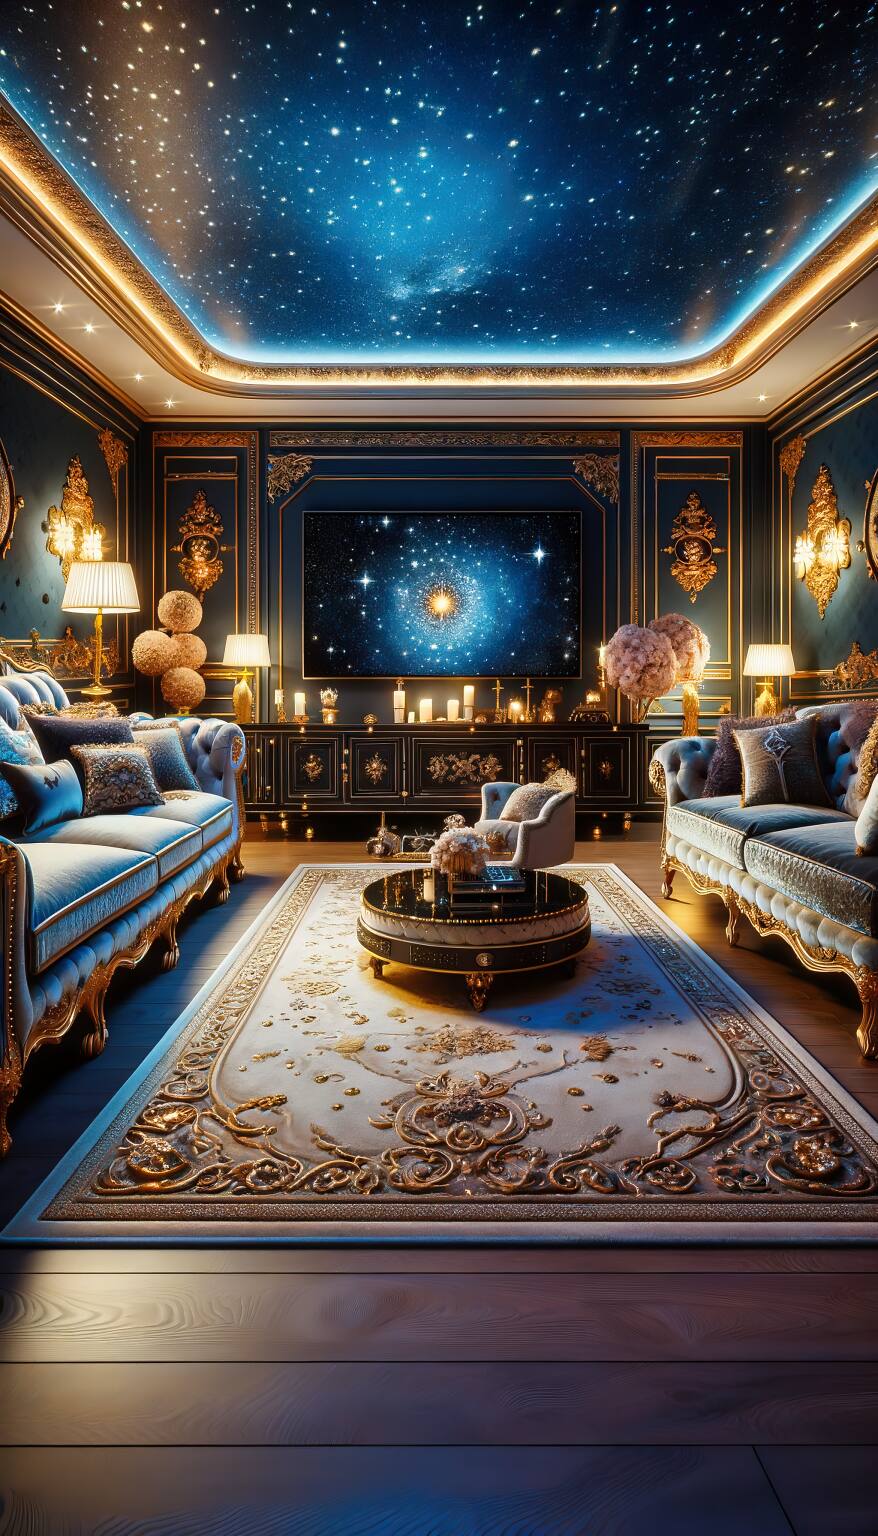 Ein Luxuriöses Und Romantisches Wohnzimmer In Mitternachtsblau Und Gold Mit Einem Plüschsofa, Einem Teppich Mit Ornamenten Und Einem Modernen Flachbildfernseher.